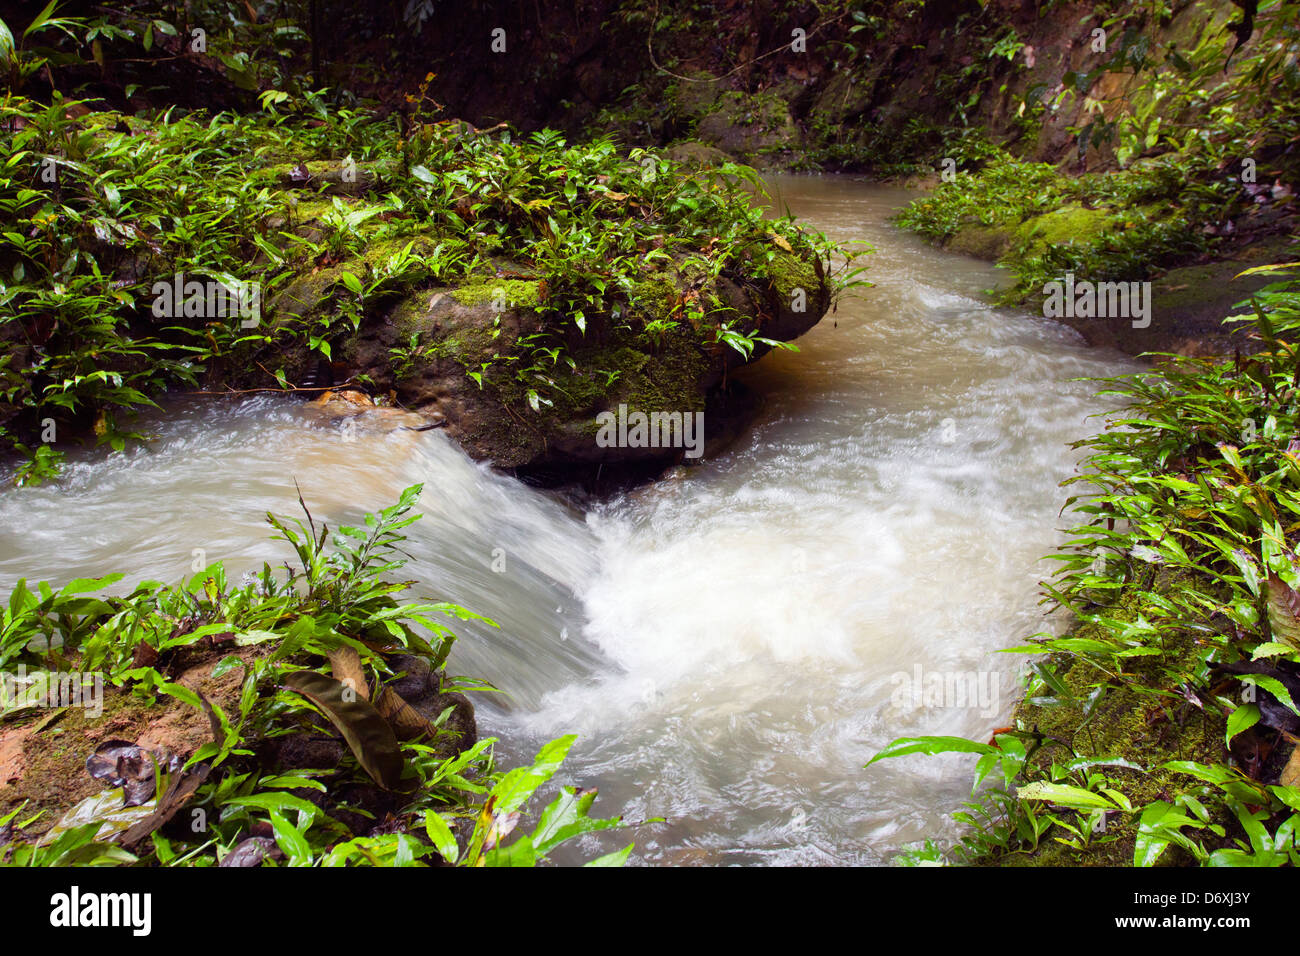 Strom fließt durch den tropischen Regenwald im ecuadorianischen Amazonasgebiet. Stockfoto